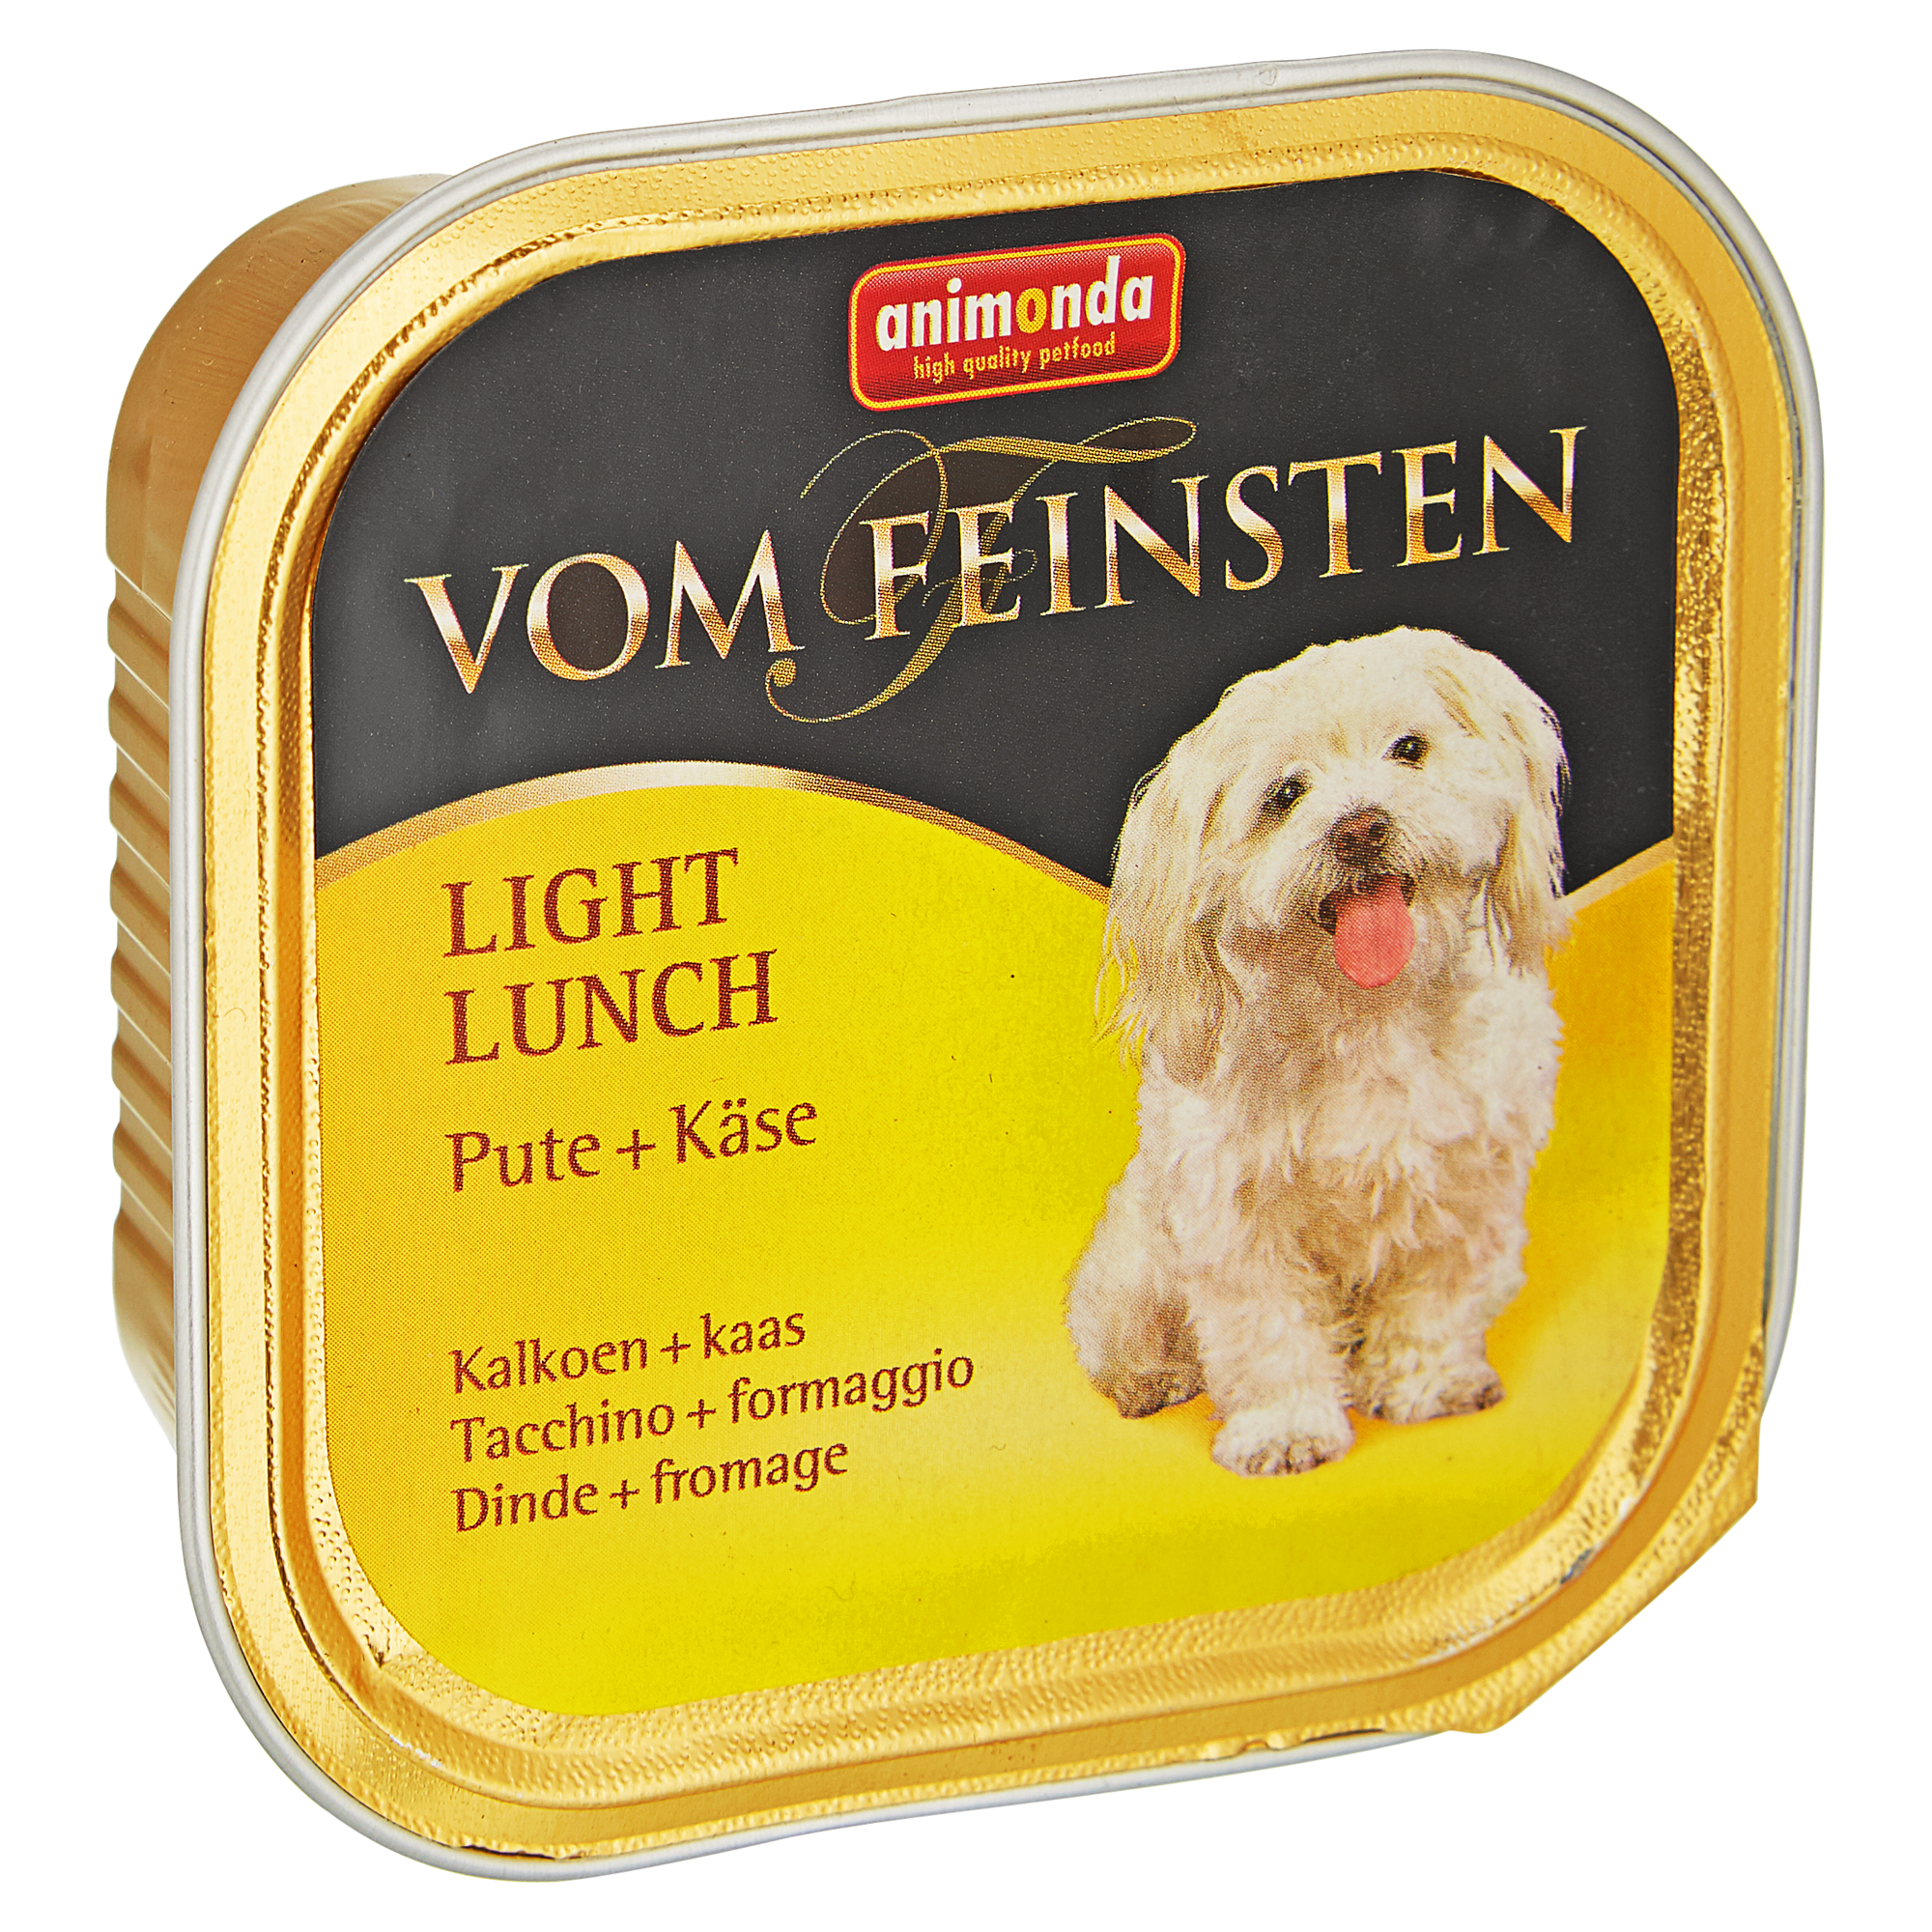 Hundenassfutter "Vom Feinsten" Light Lunch mit Pute/Käse 150 g + product picture